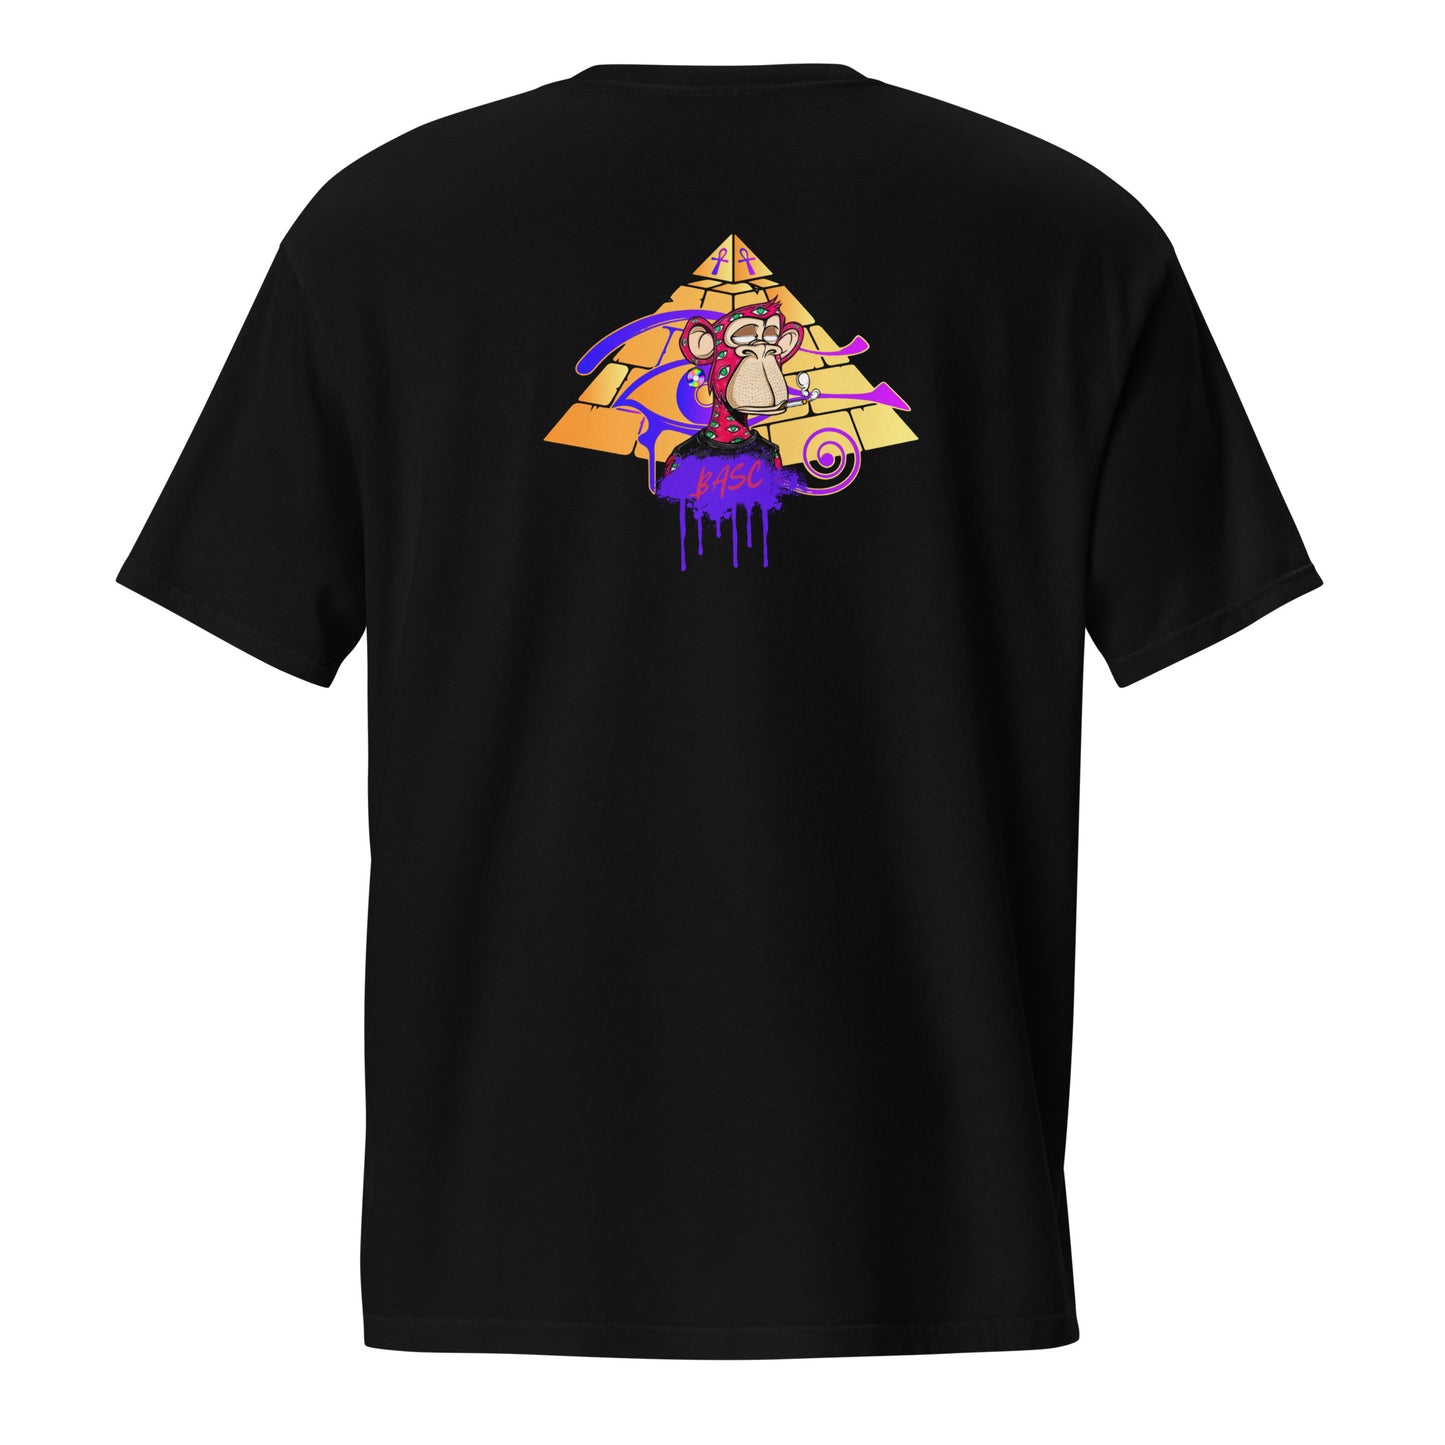 BASC ILLuminati pocket t-shirt